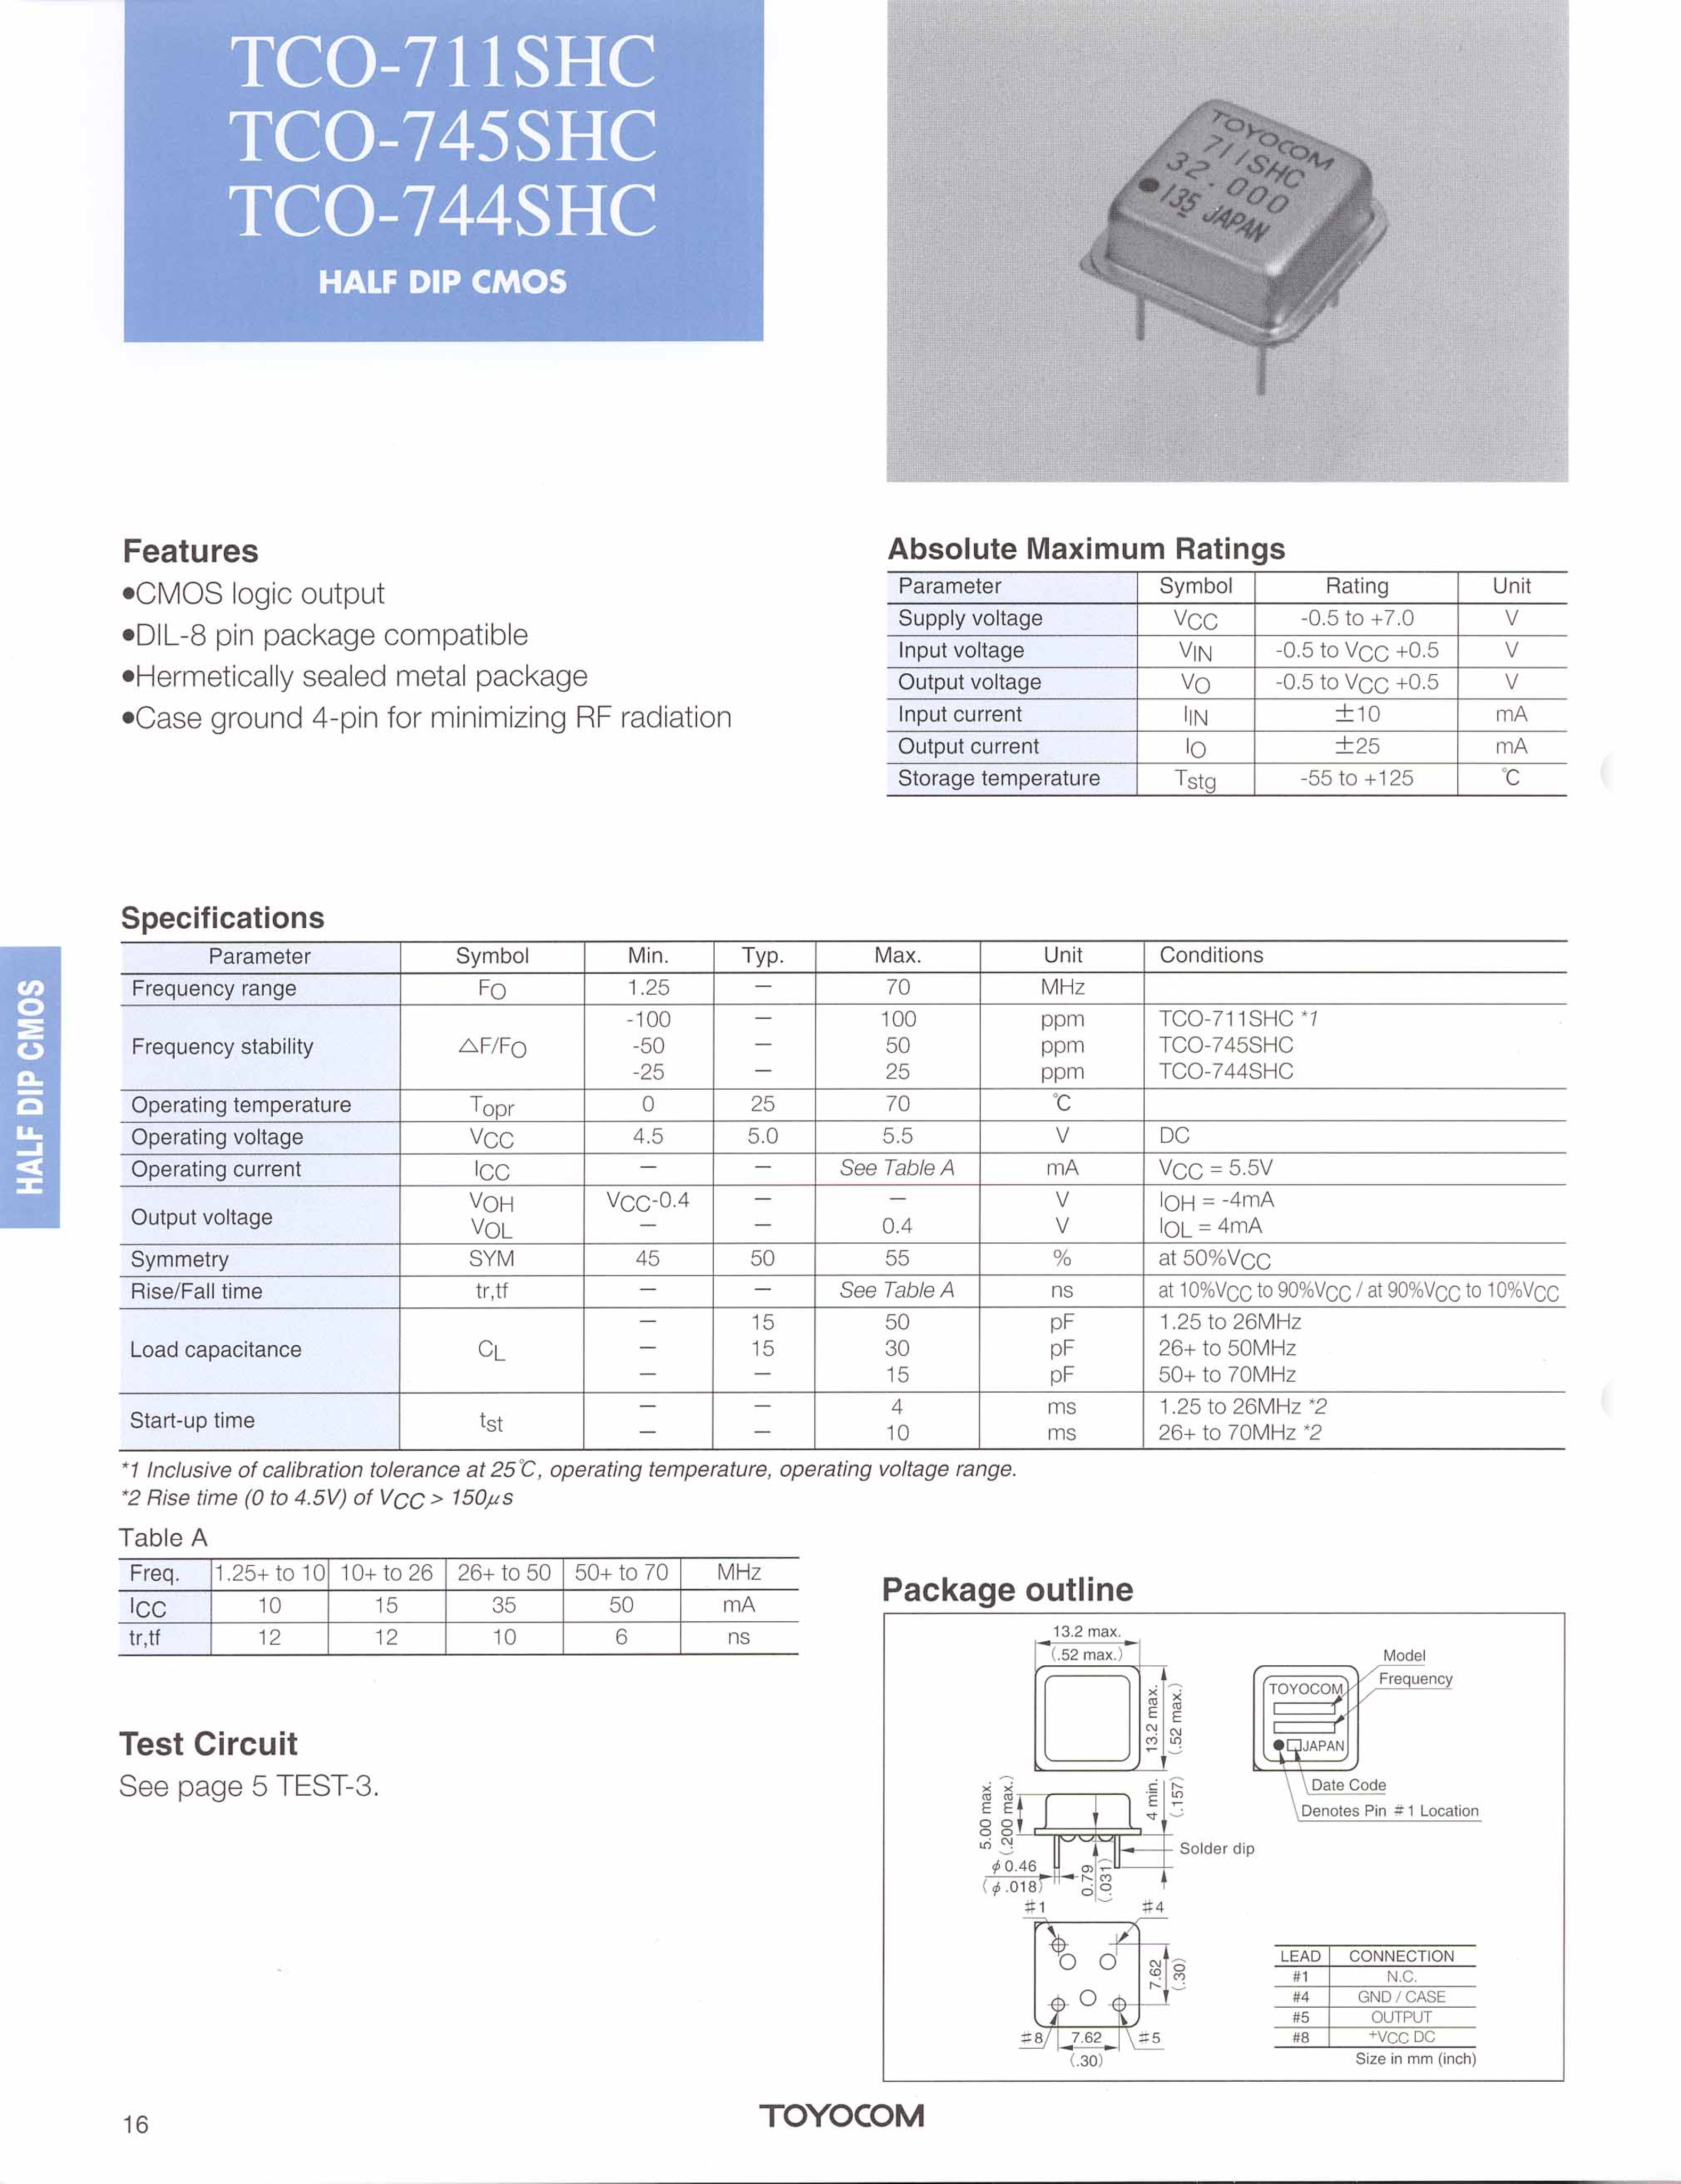 Datasheet TCO-711SHC - (TCO-711SHC - TCO-745SHC) CMOS logic output page 1